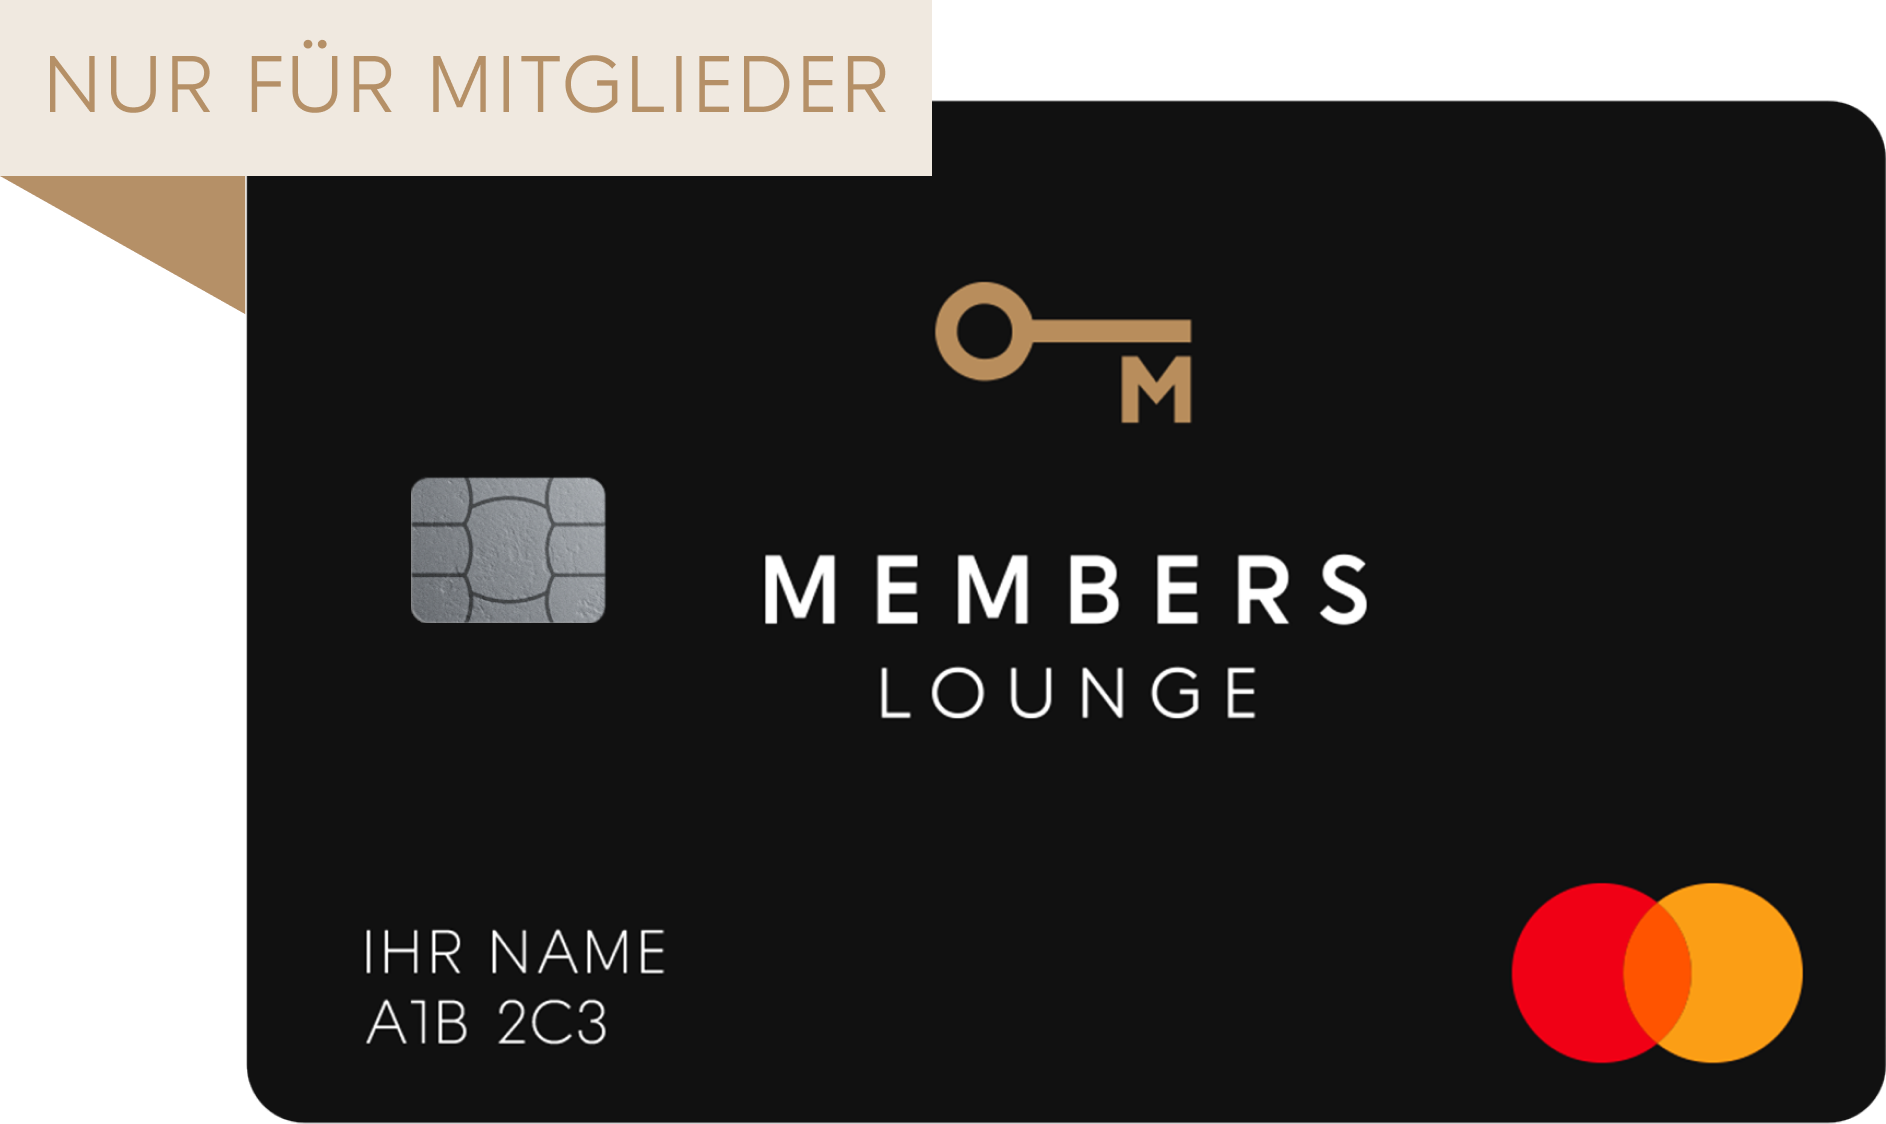 Nur für Mitglieder -  Members lounge karte